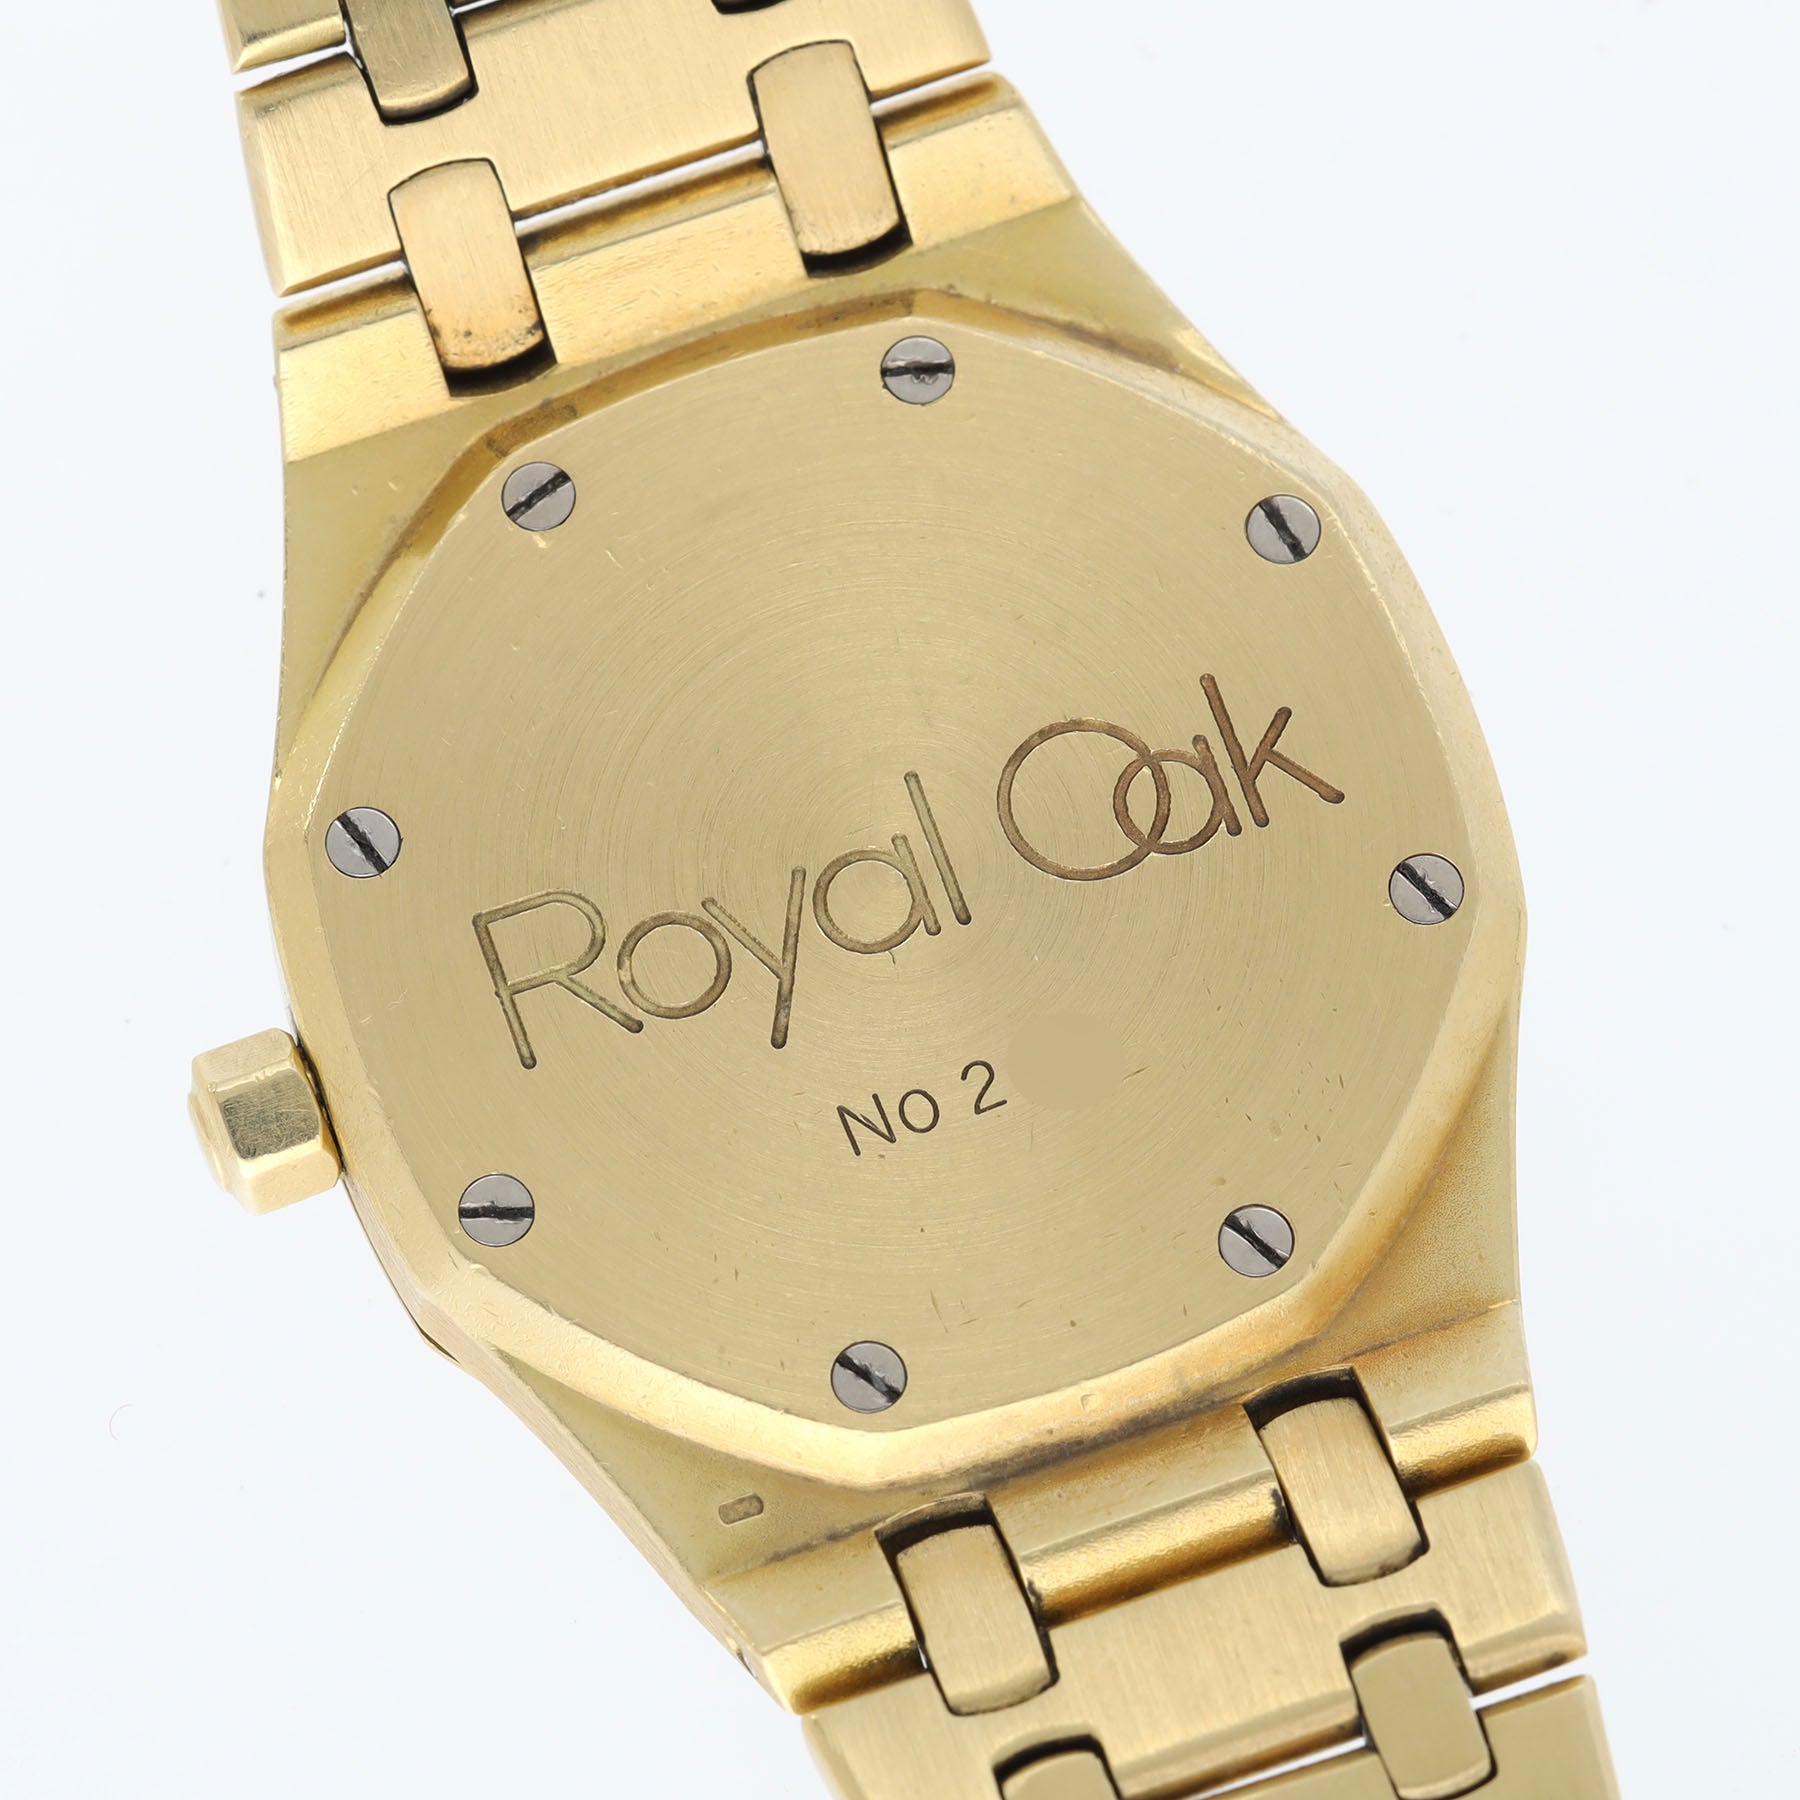 Audemars Piguet Royal Oak Day-Date 25572BA "Owl" cream dial